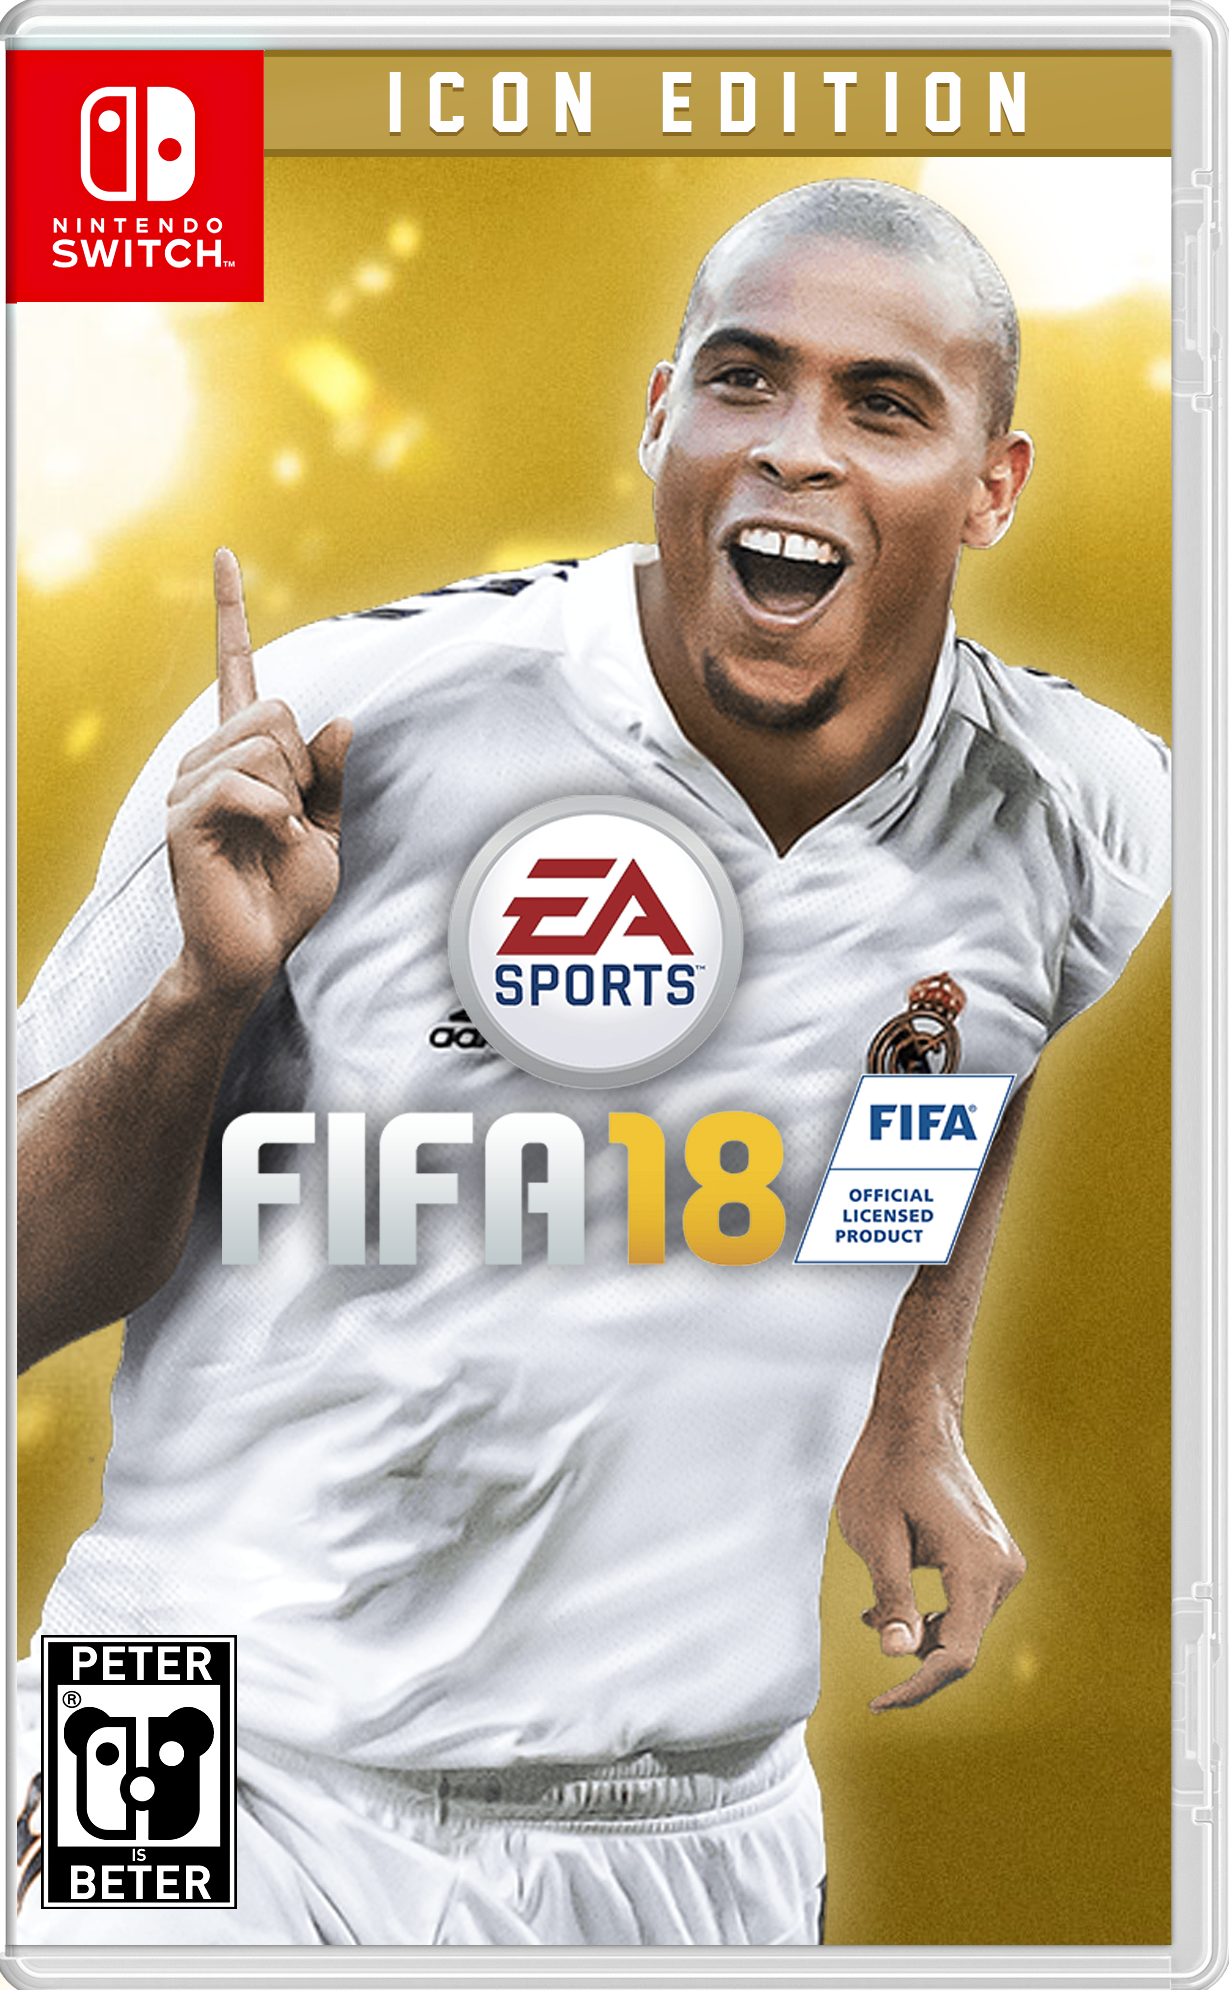 FIFA 18 Manual – FIFPlay